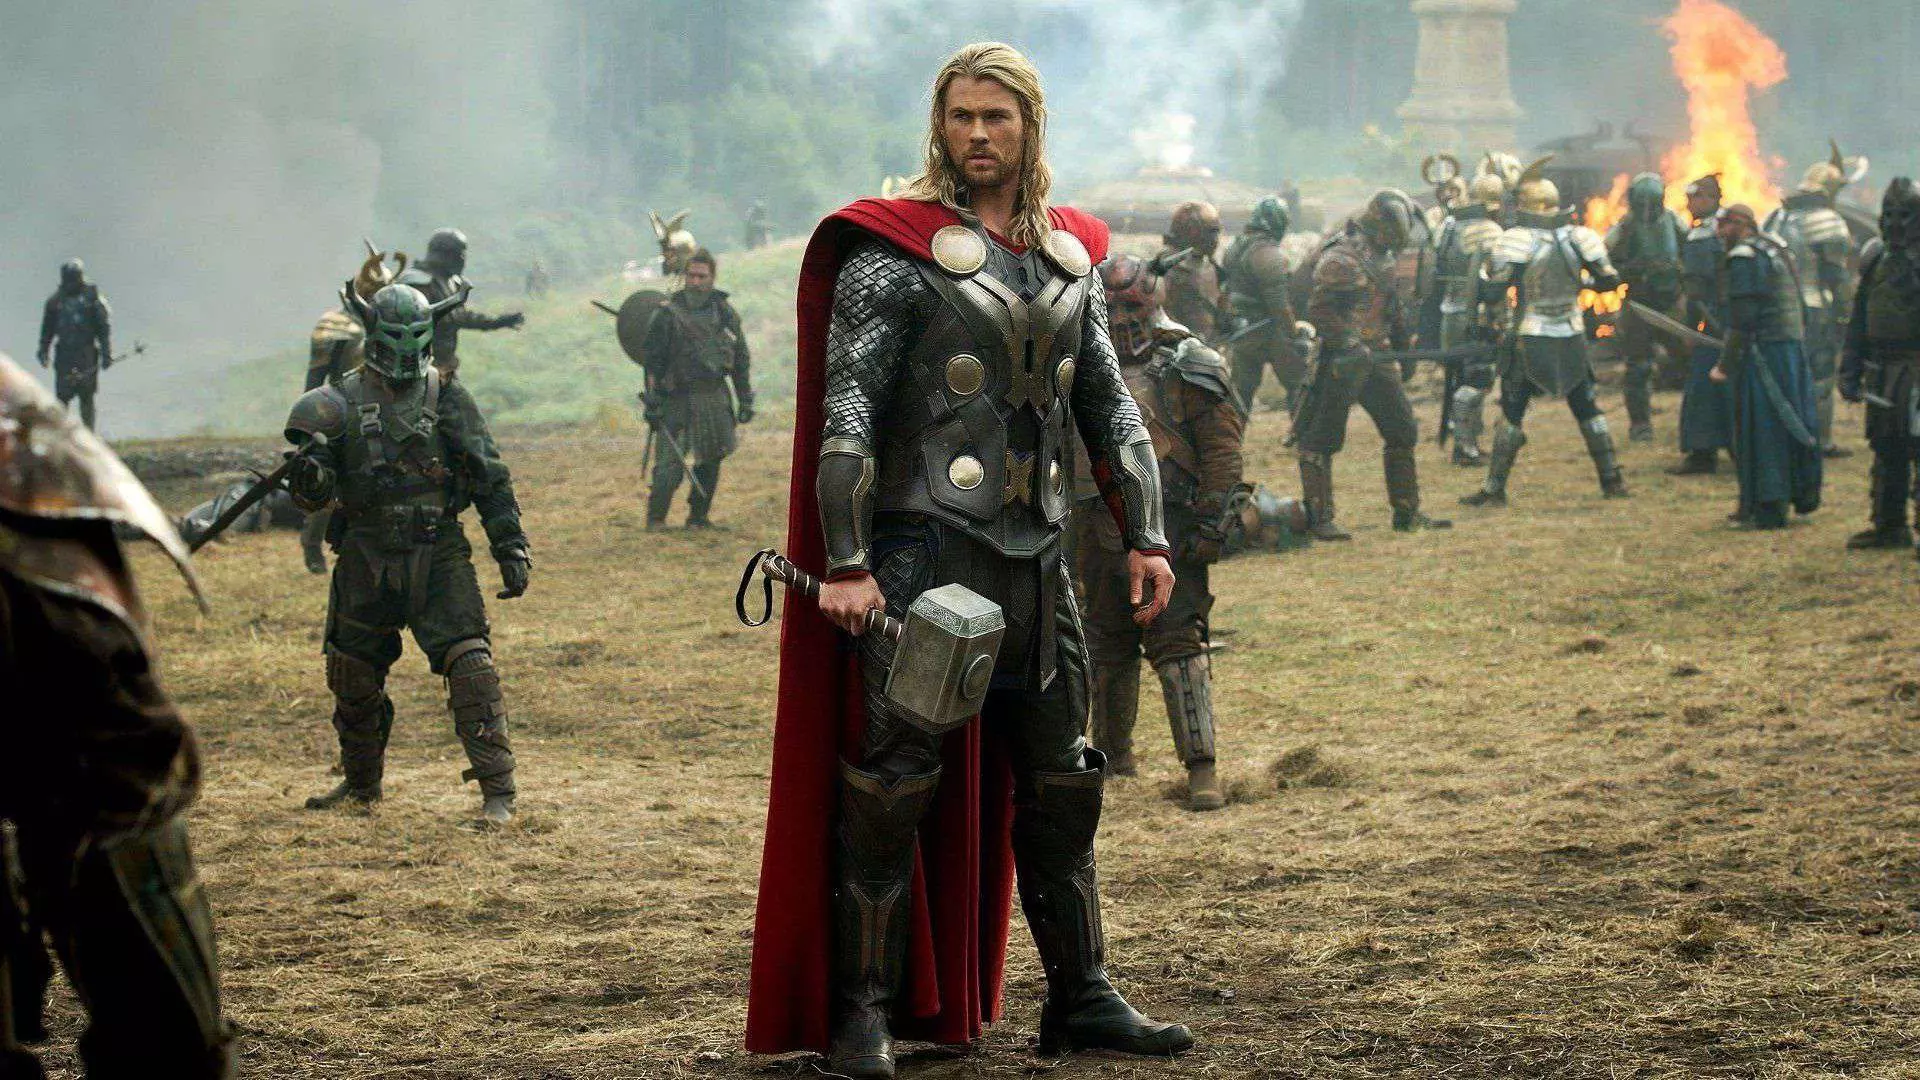 ثور با بازی کریس همسورث در افتتاحیه فیلم Thor: The Dark World